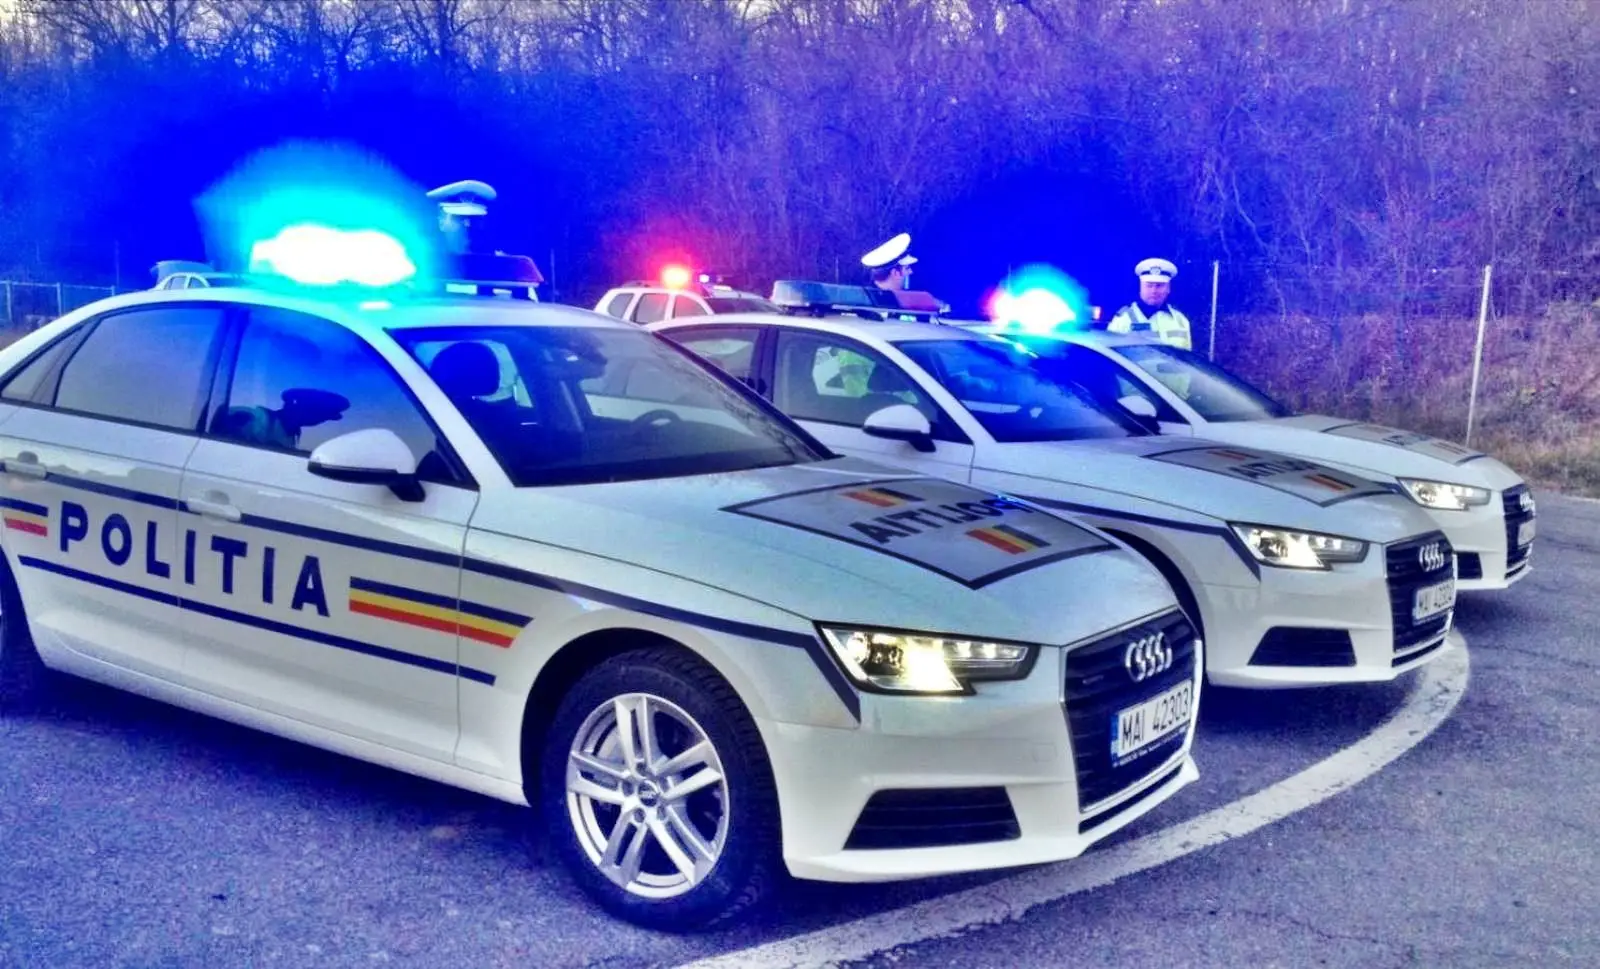 Det rumænske politi beder rumænere om at være forsigtige, når de krydser gaden